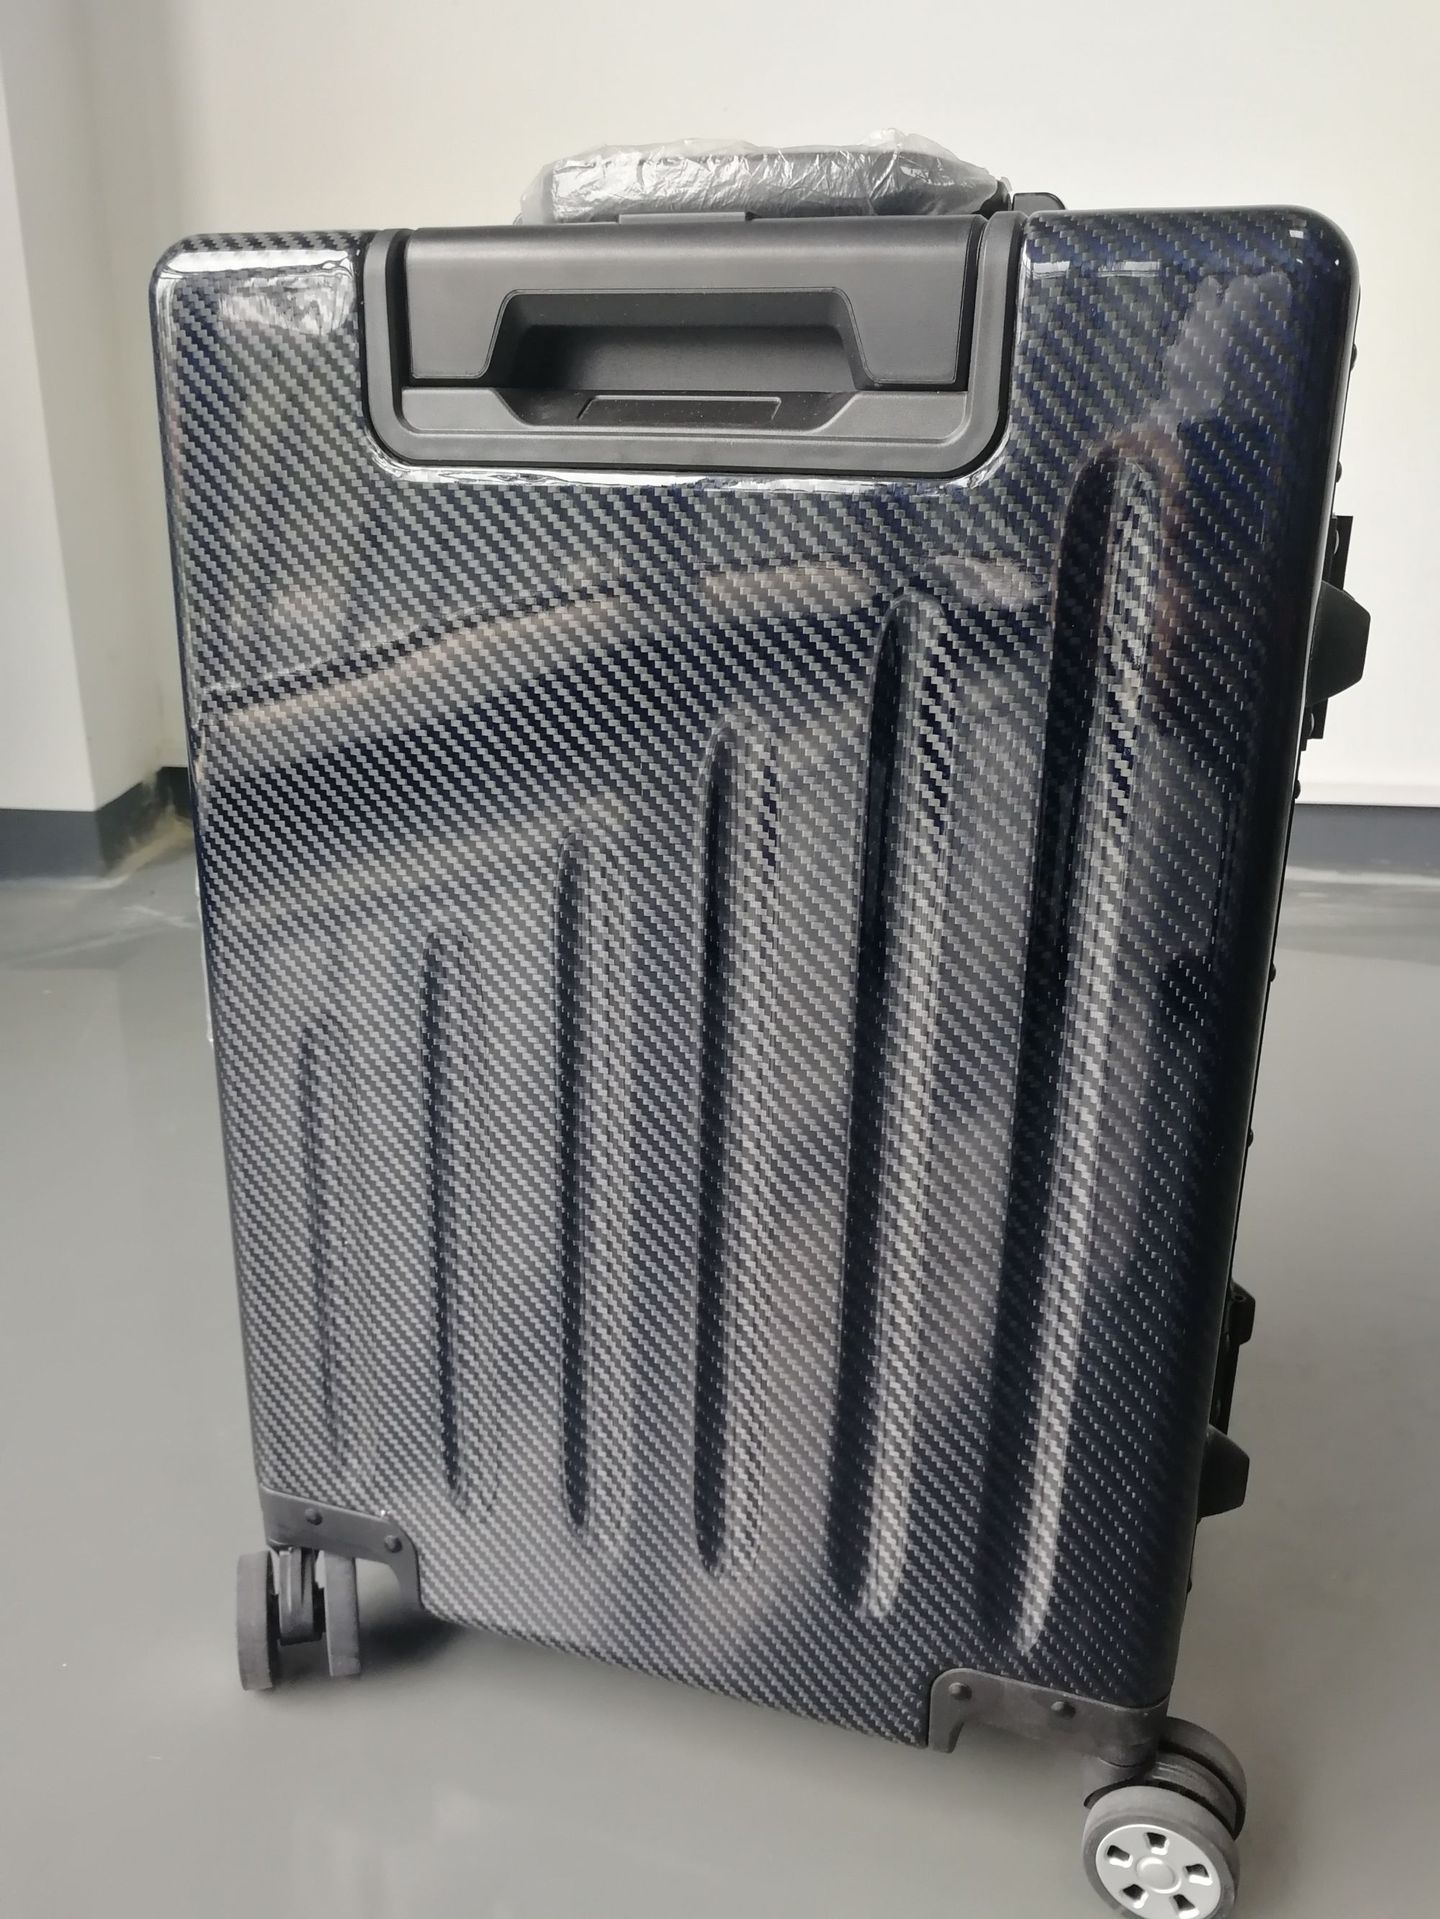 铝框拉杆箱_行李箱 铝框拉杆箱 20寸铝合金 厂家专业生产定制 - 阿里巴巴